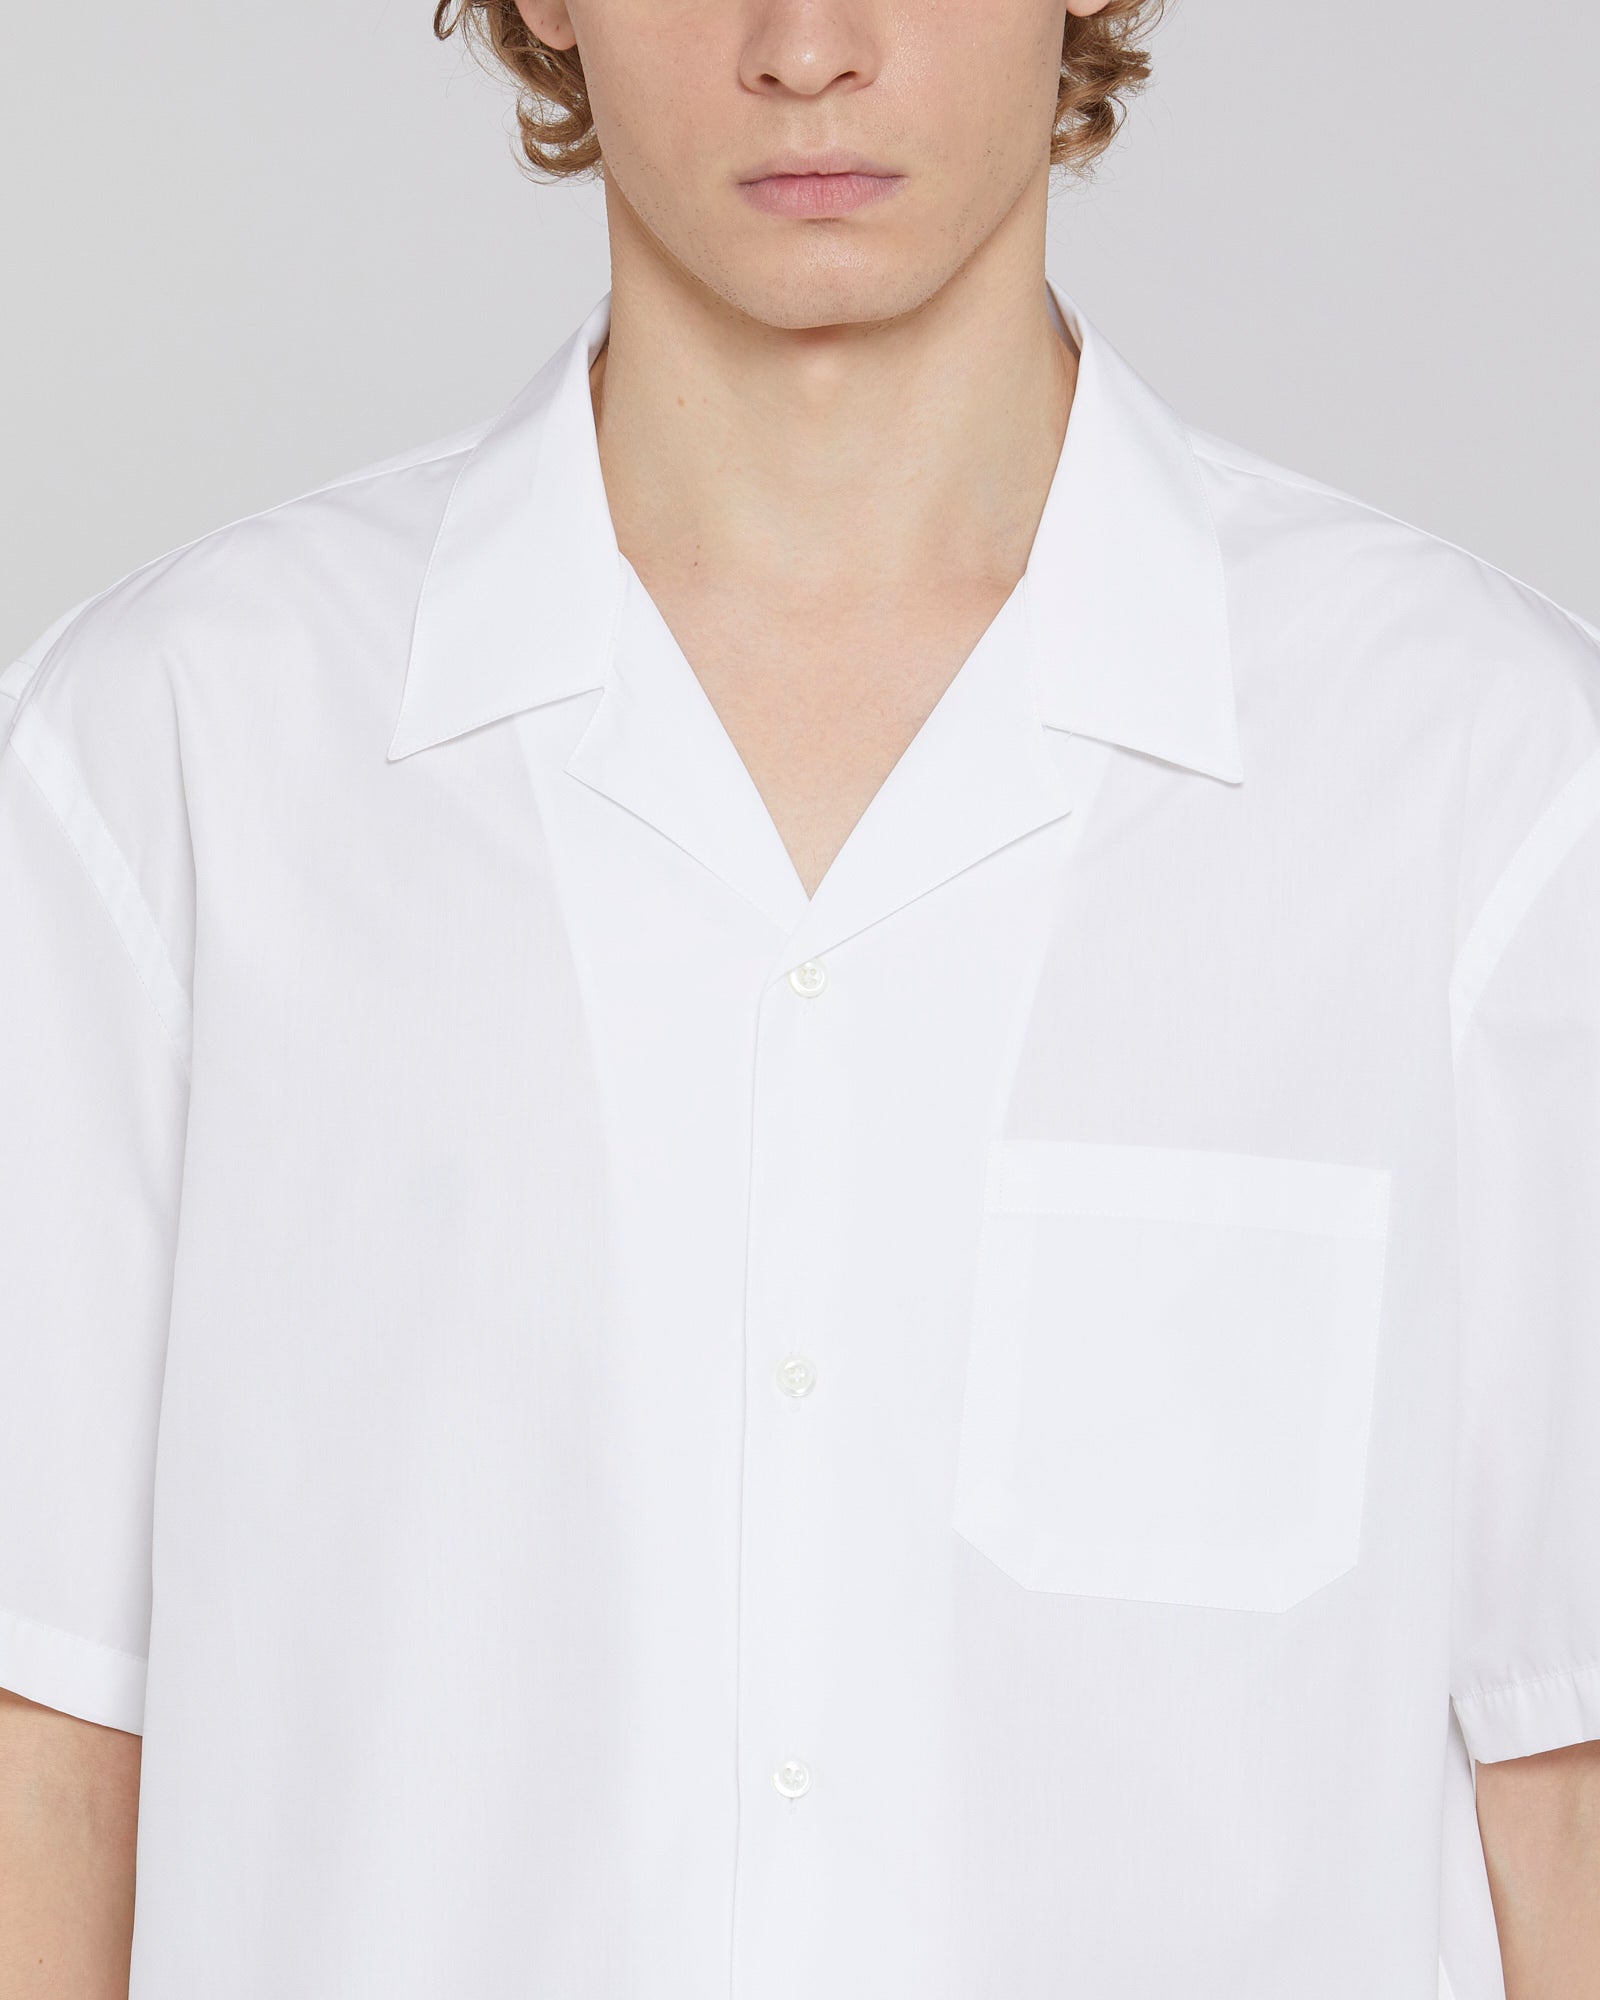 Short-sleeved poplin cotton shirt white